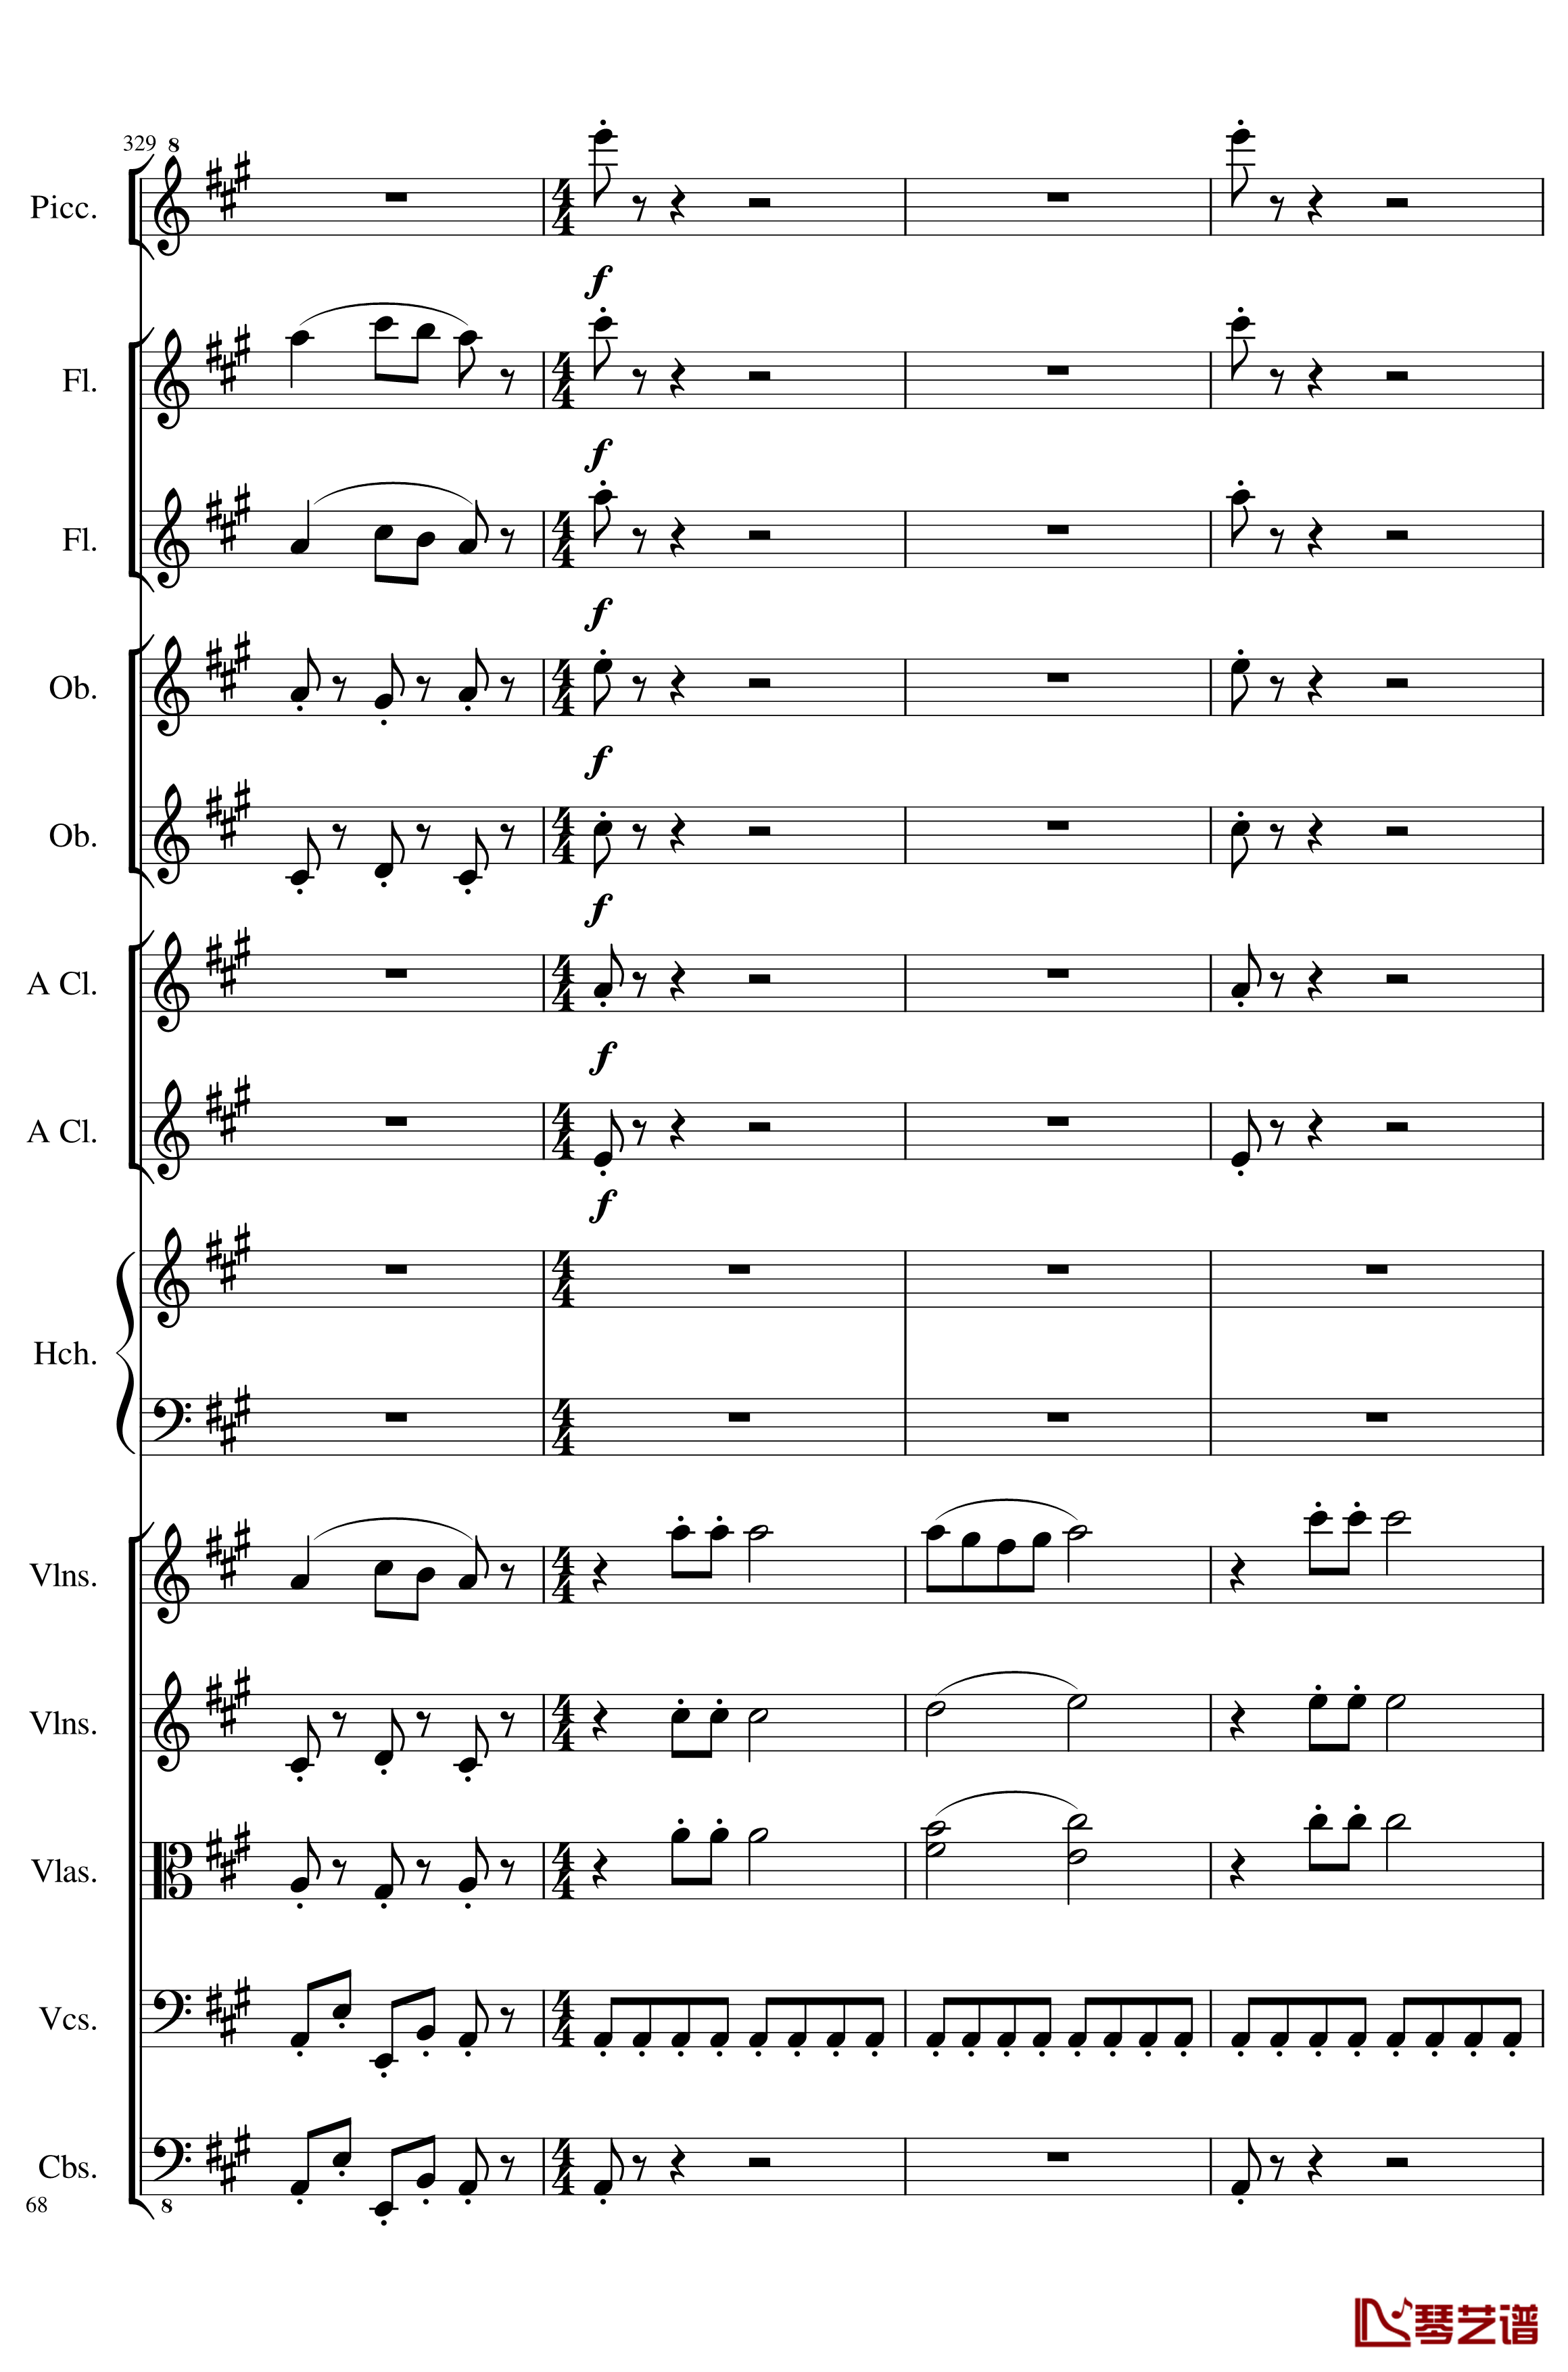 7 Contredanses No.1-7, Op.124钢琴谱-7首乡村舞曲，第一至第七，作品124-一个球68